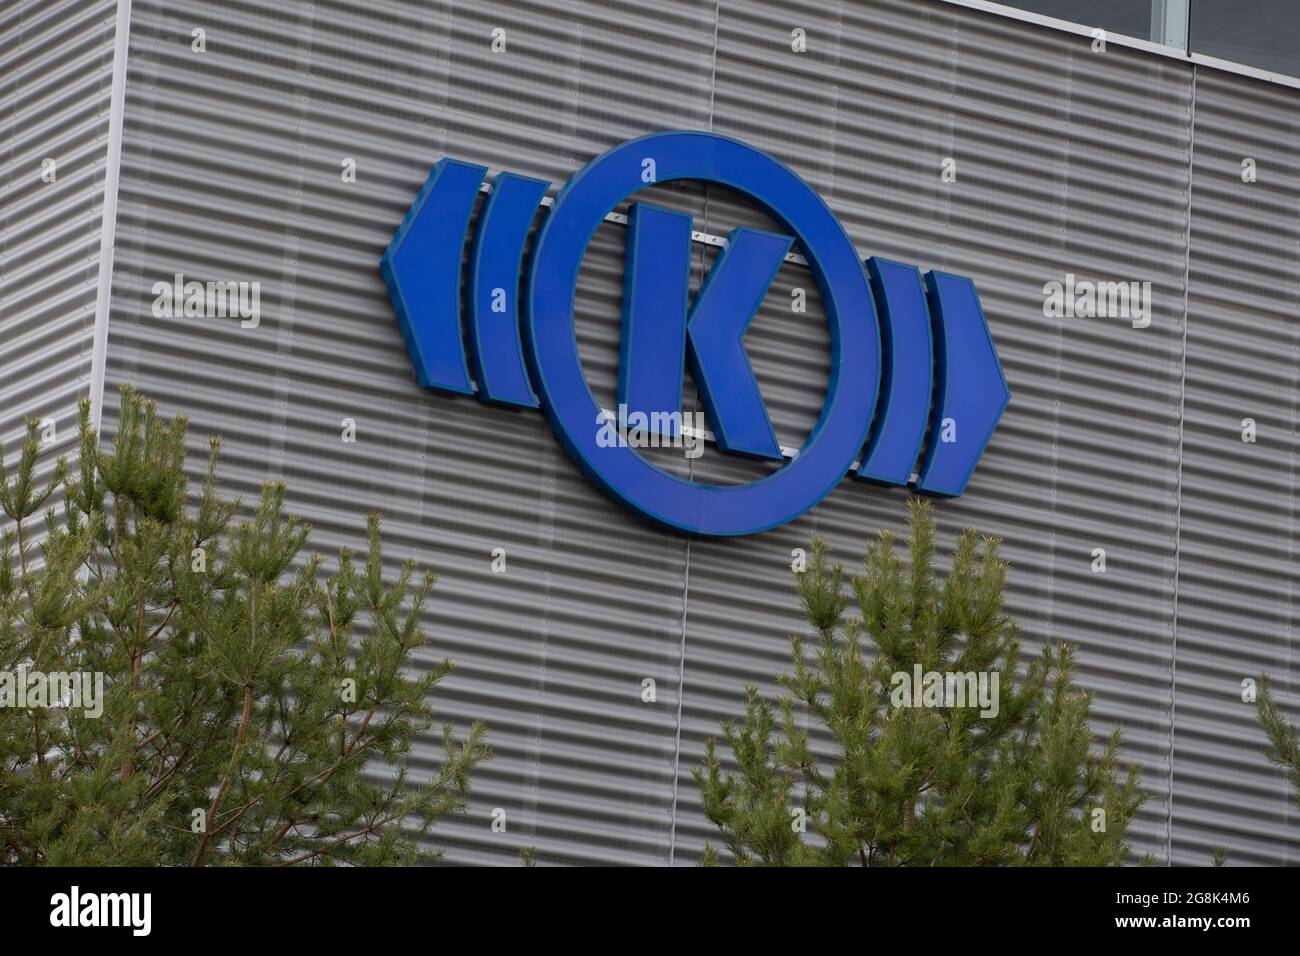 Der Hauptsitz von Knorr Bremse in München. Knorr-Bremse ist ein deutsches Unternehmen, welches weltweit führende Hersteller von Bremssystemen für Schiene- und Nutzfahrzeuge ist. 2018 ging das Unternehmen an die Börse und ist aktuell im MDAX gelistet. (Foto: Alexander Pohl/Sipa USA) Quelle: SIPA USA/Alamy Live News Stockfoto